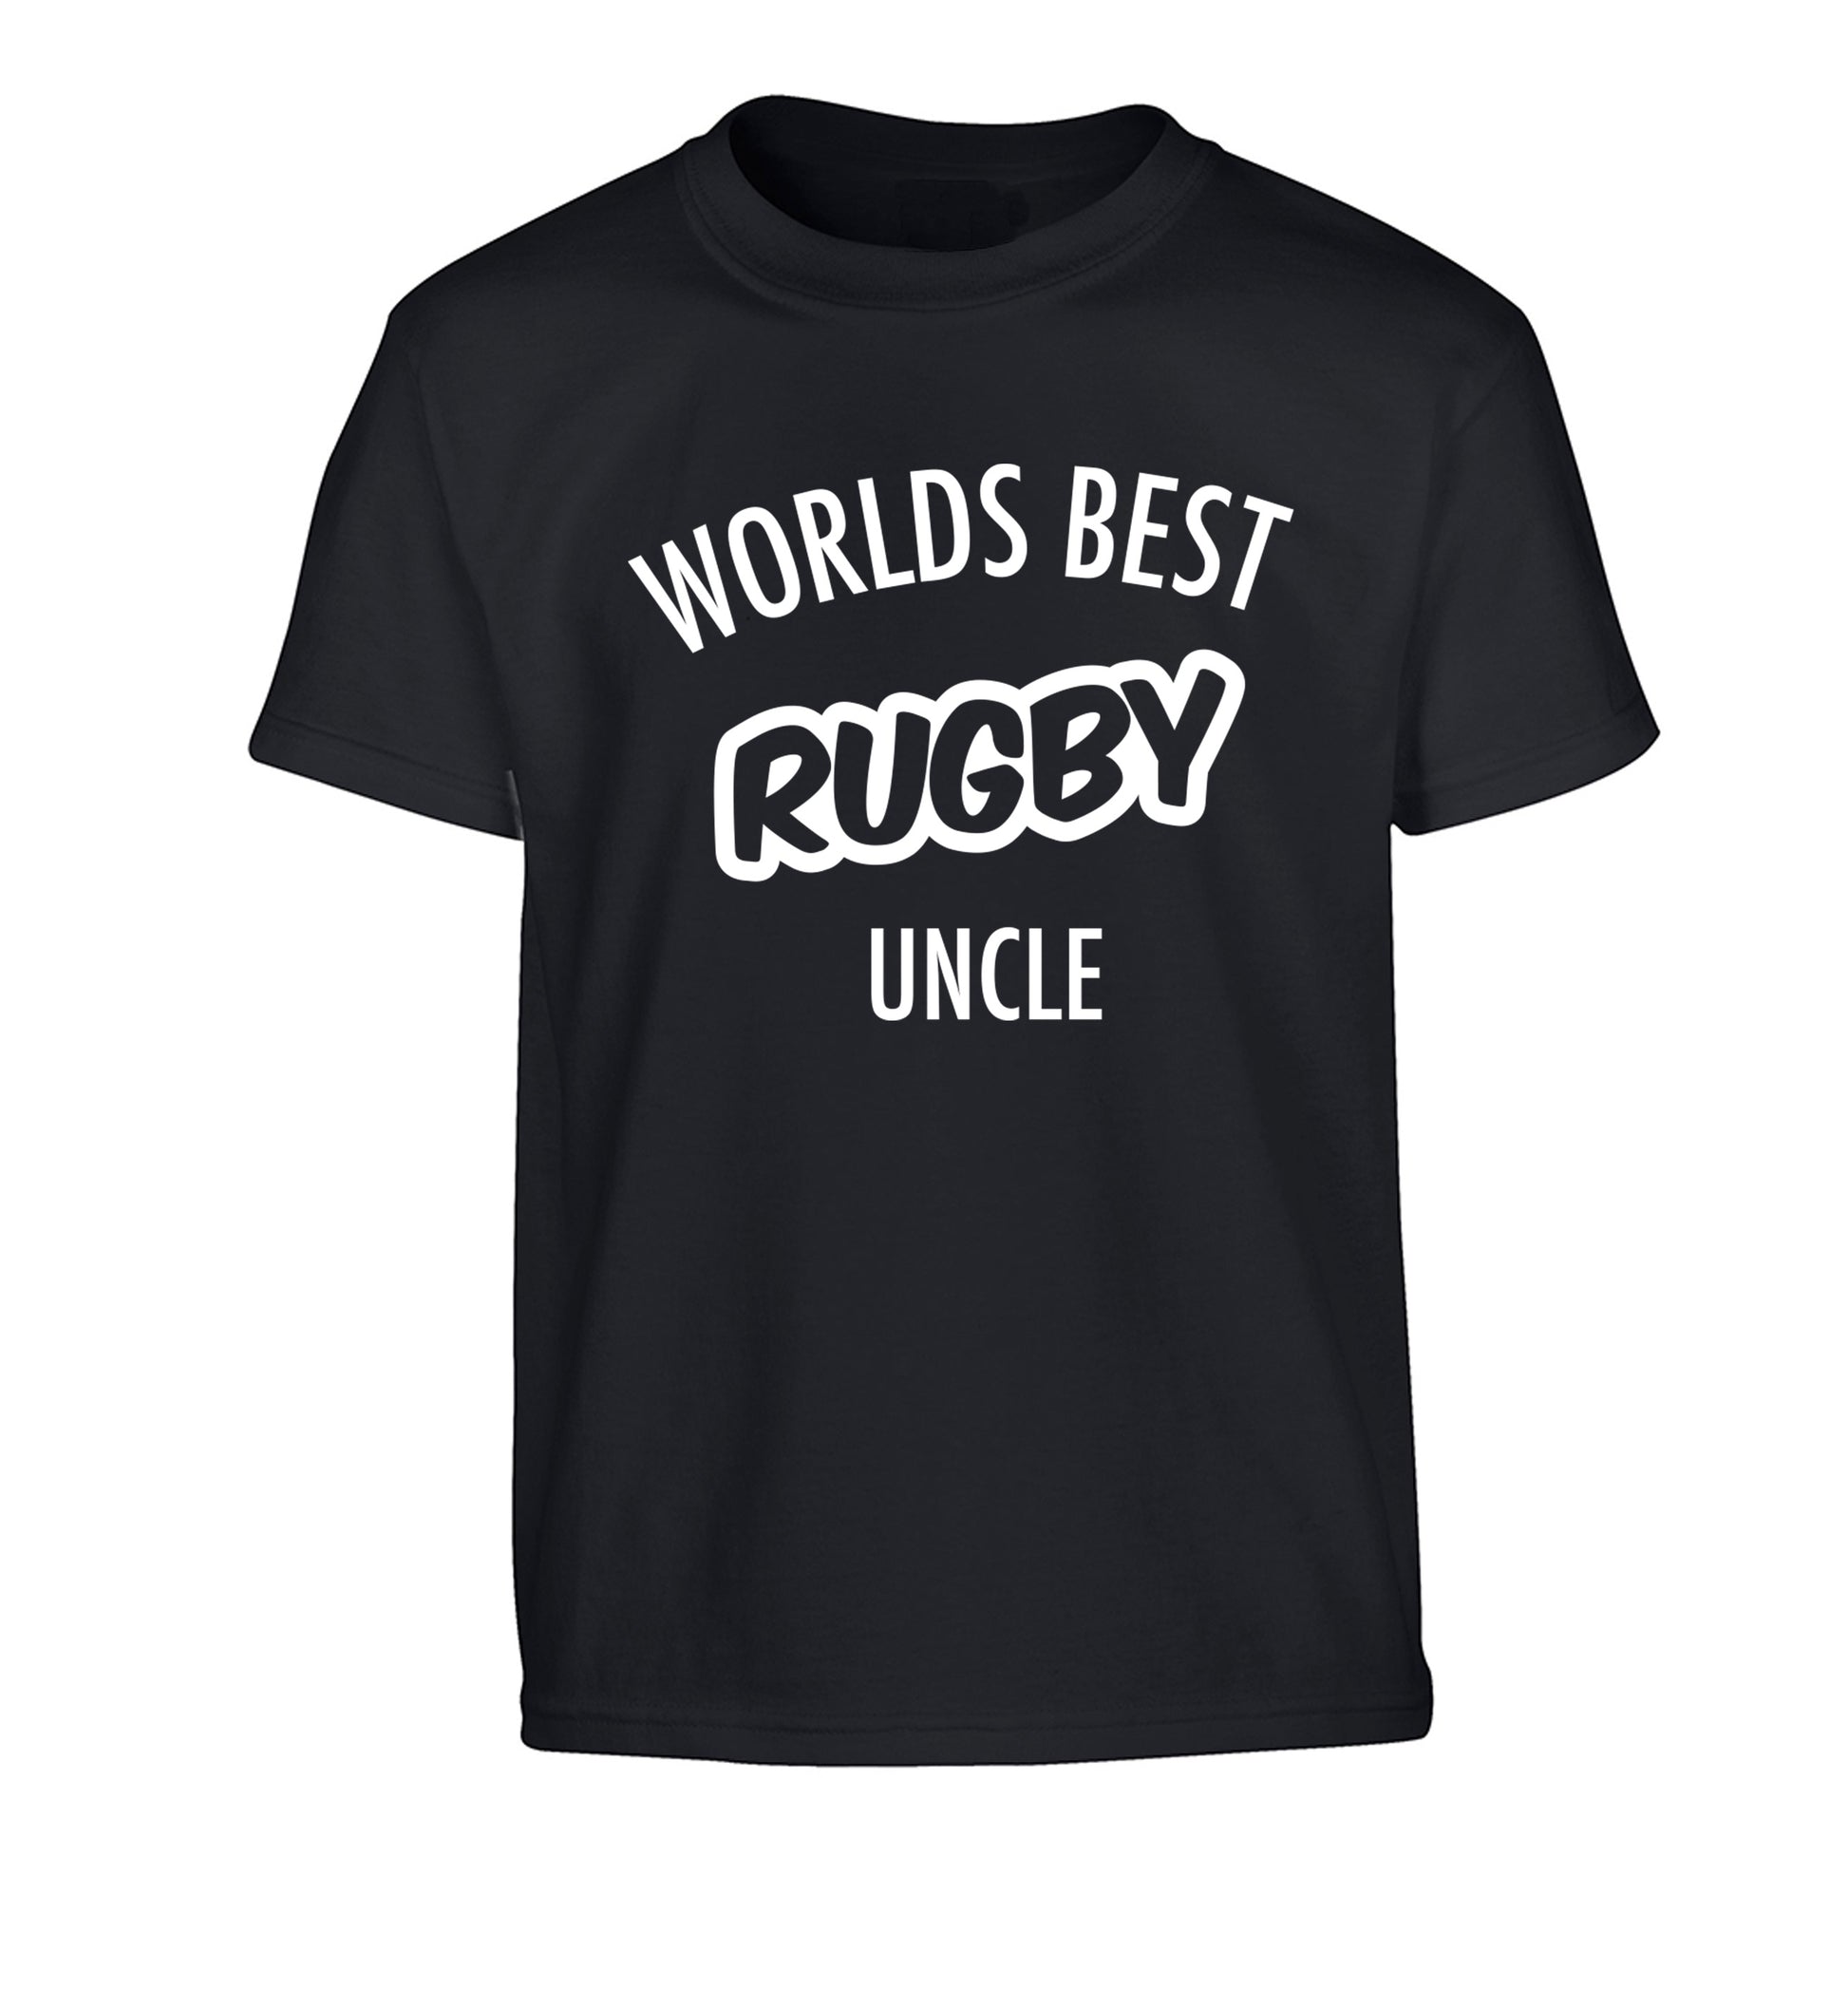 Worlds best rugby uncle Children's black Tshirt 12-13 Years